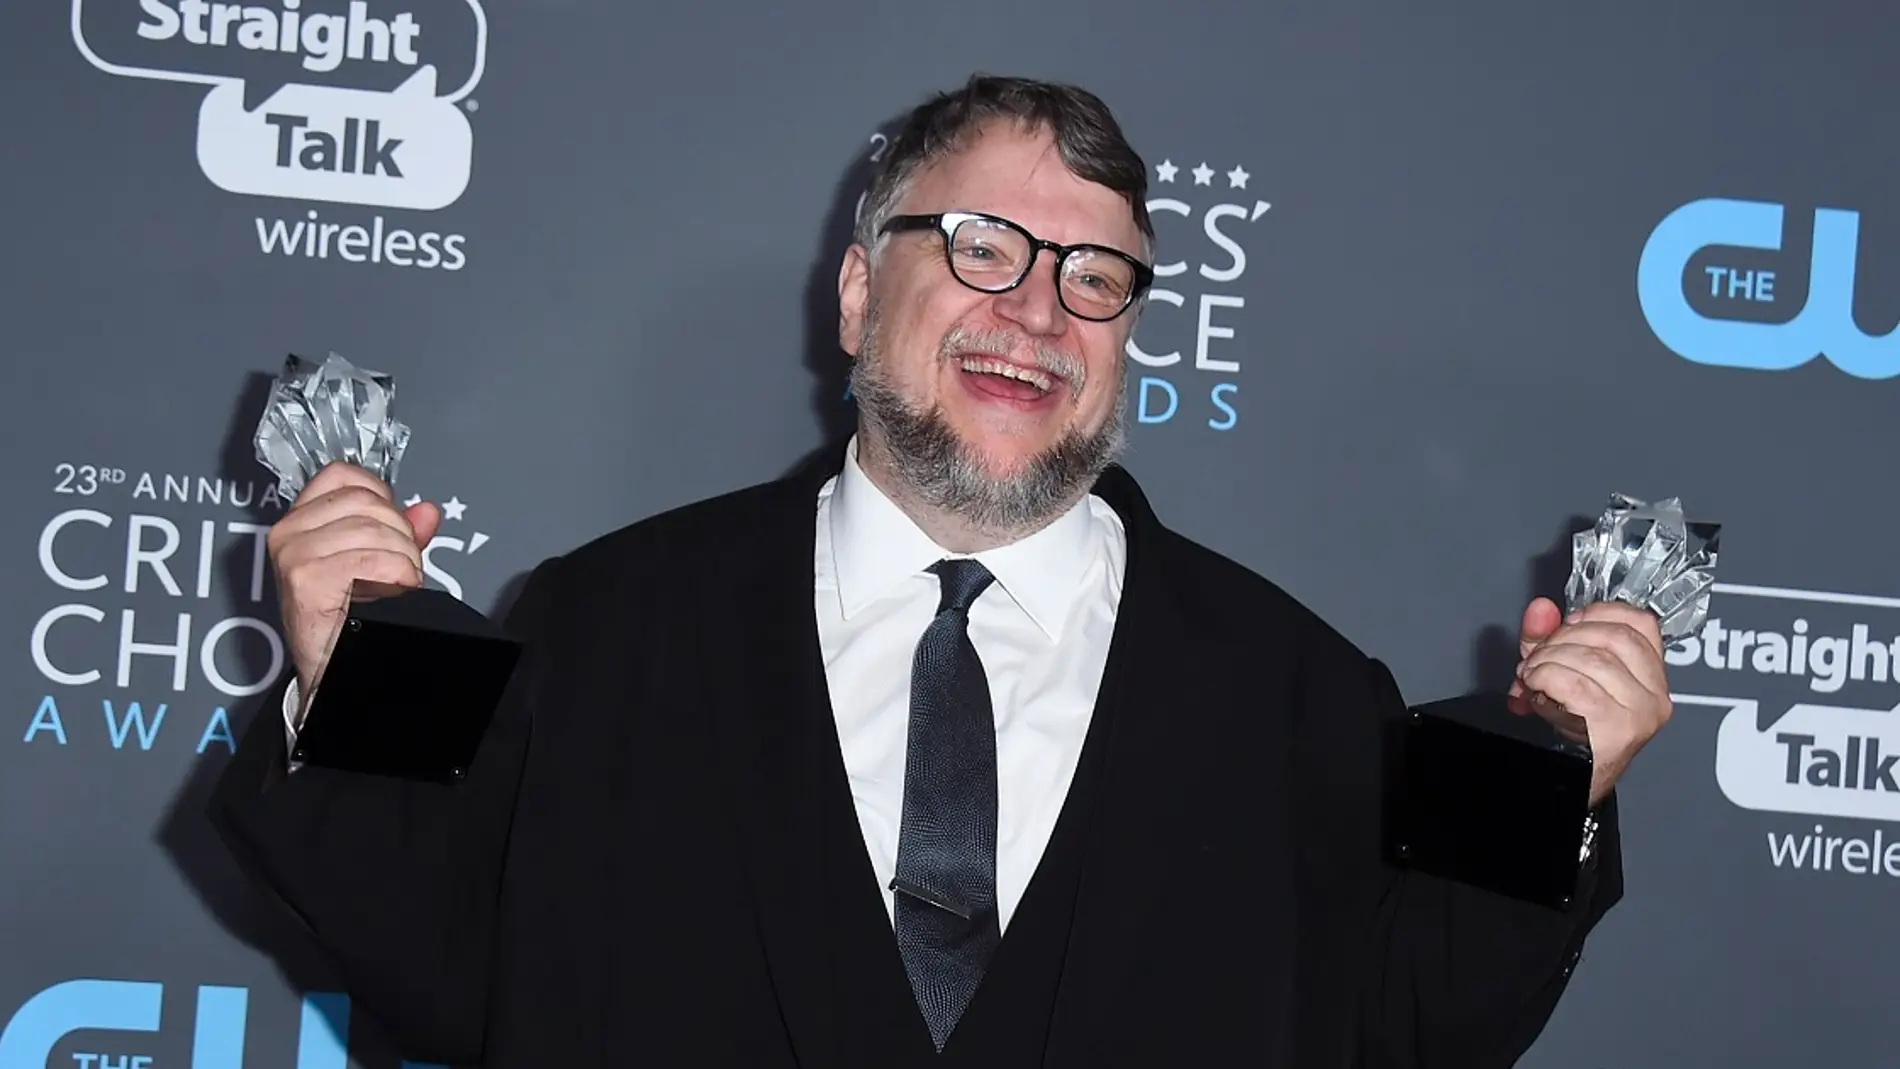 Guillermo del Toro, exultante en los Critics' Choice Awards